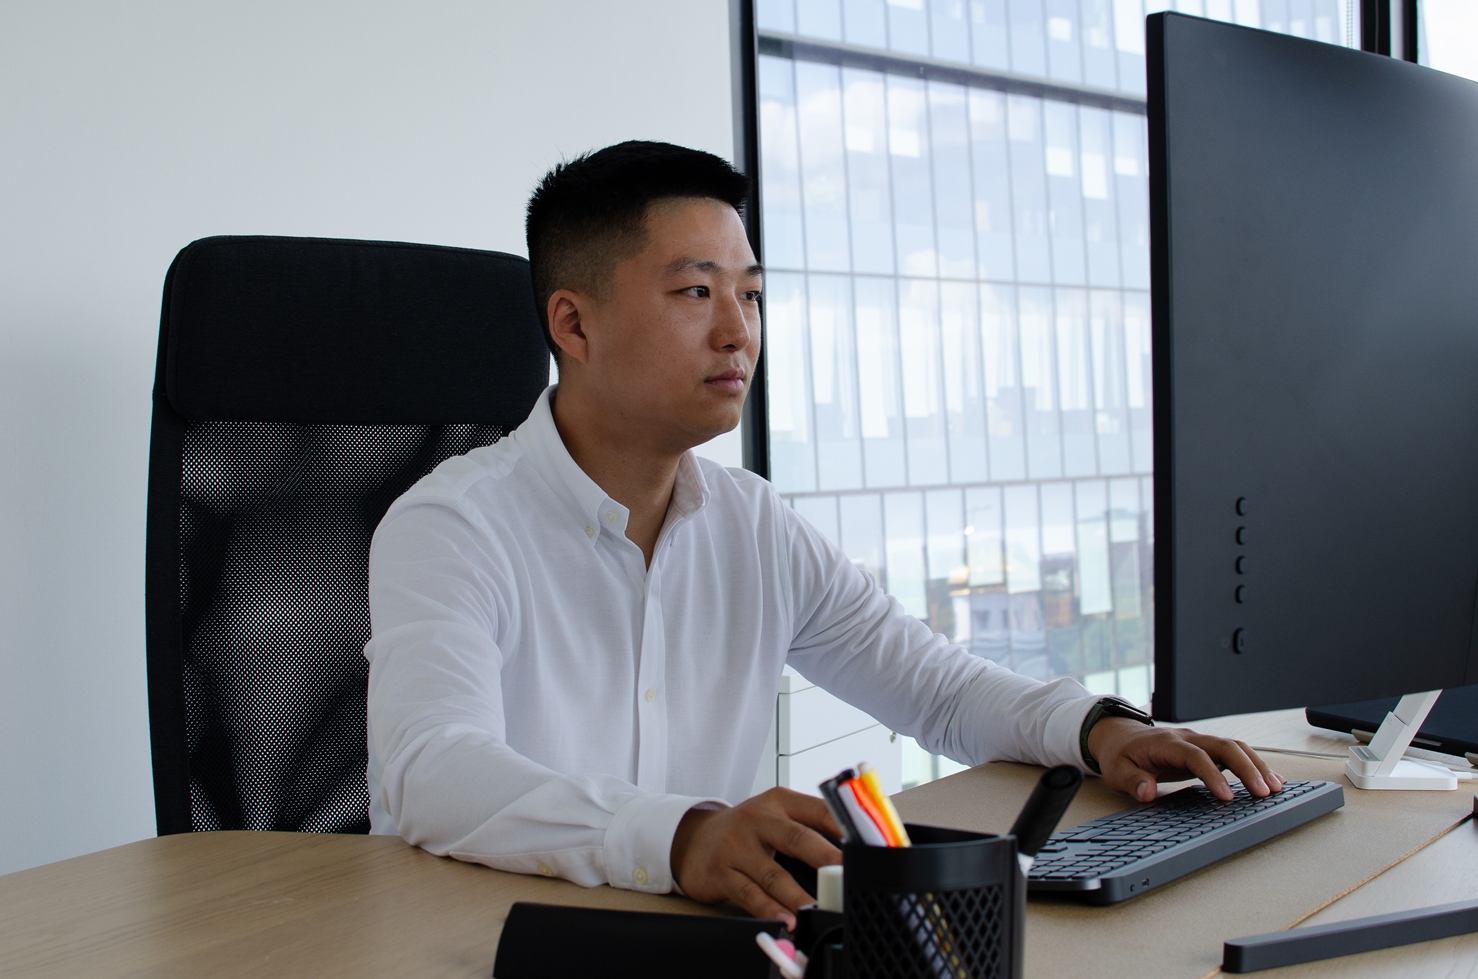 Глава подразделения Xiaomi в СНГ Юй Мань о приоритетных задачах, промежуточных итогах и новых проектах в Казахстане